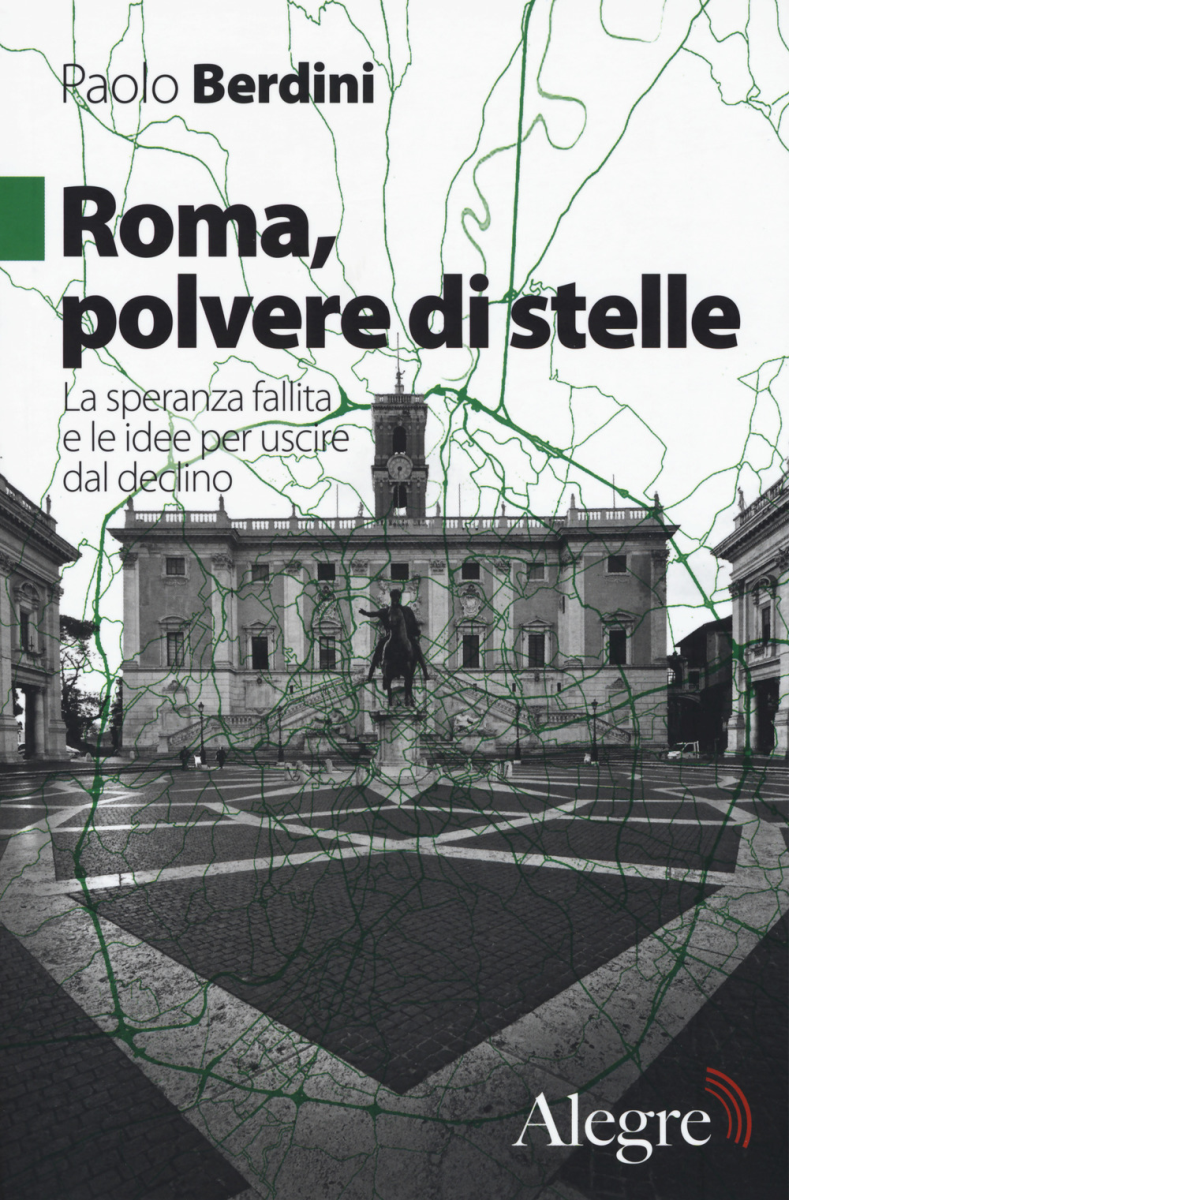 ROMA,POLVERE DI STELLE di PAOLO BERDINI - edizioni alegre, 2018 libro usato